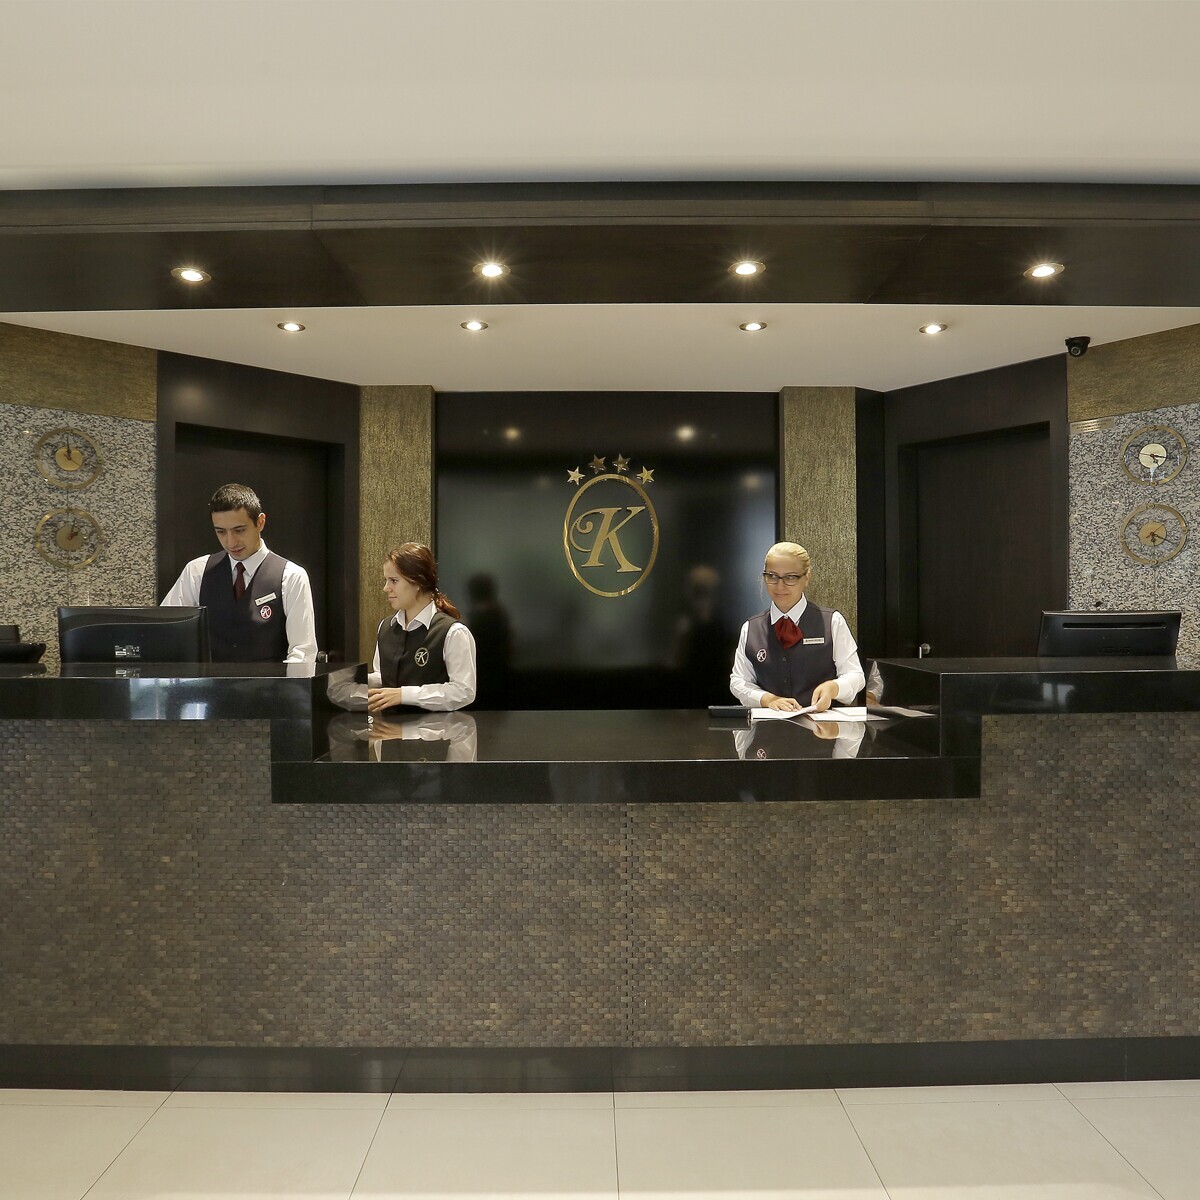 Kaya Prestige Hotel İzmir'in Modern Ambiyansında Tek veya Çift Kişilik Konaklama Seçenekleri